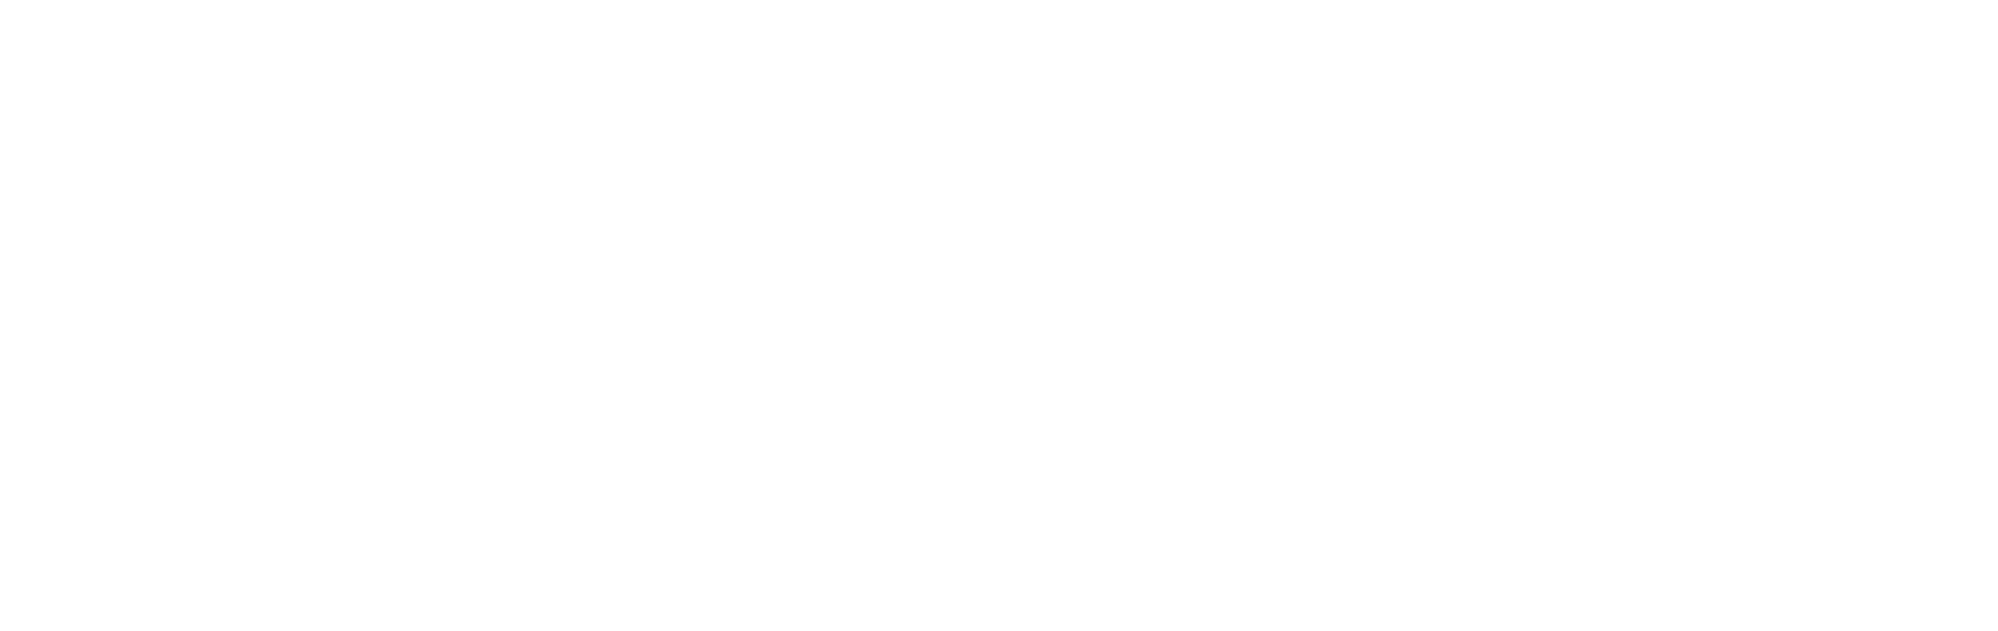 Junior Achievement Argentina_Positivo